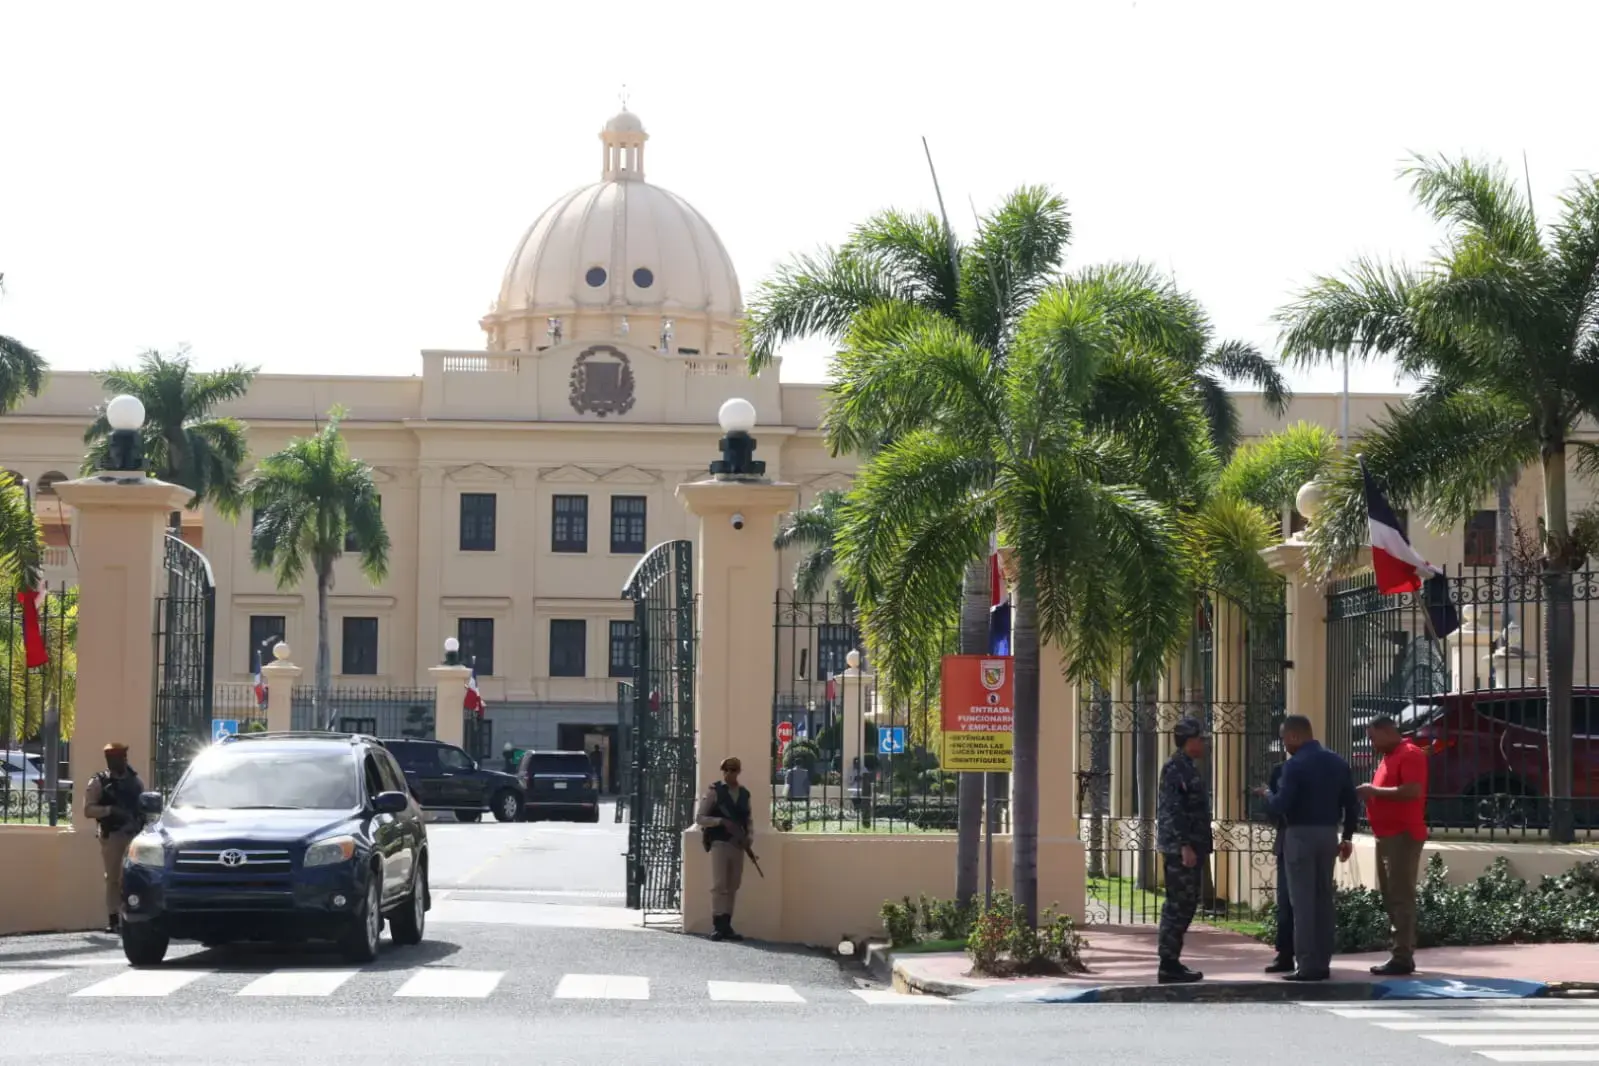 Hombre chocó intencionalmente contra el Palacio Nacional dice actuó “impulsado por instrucción divina”